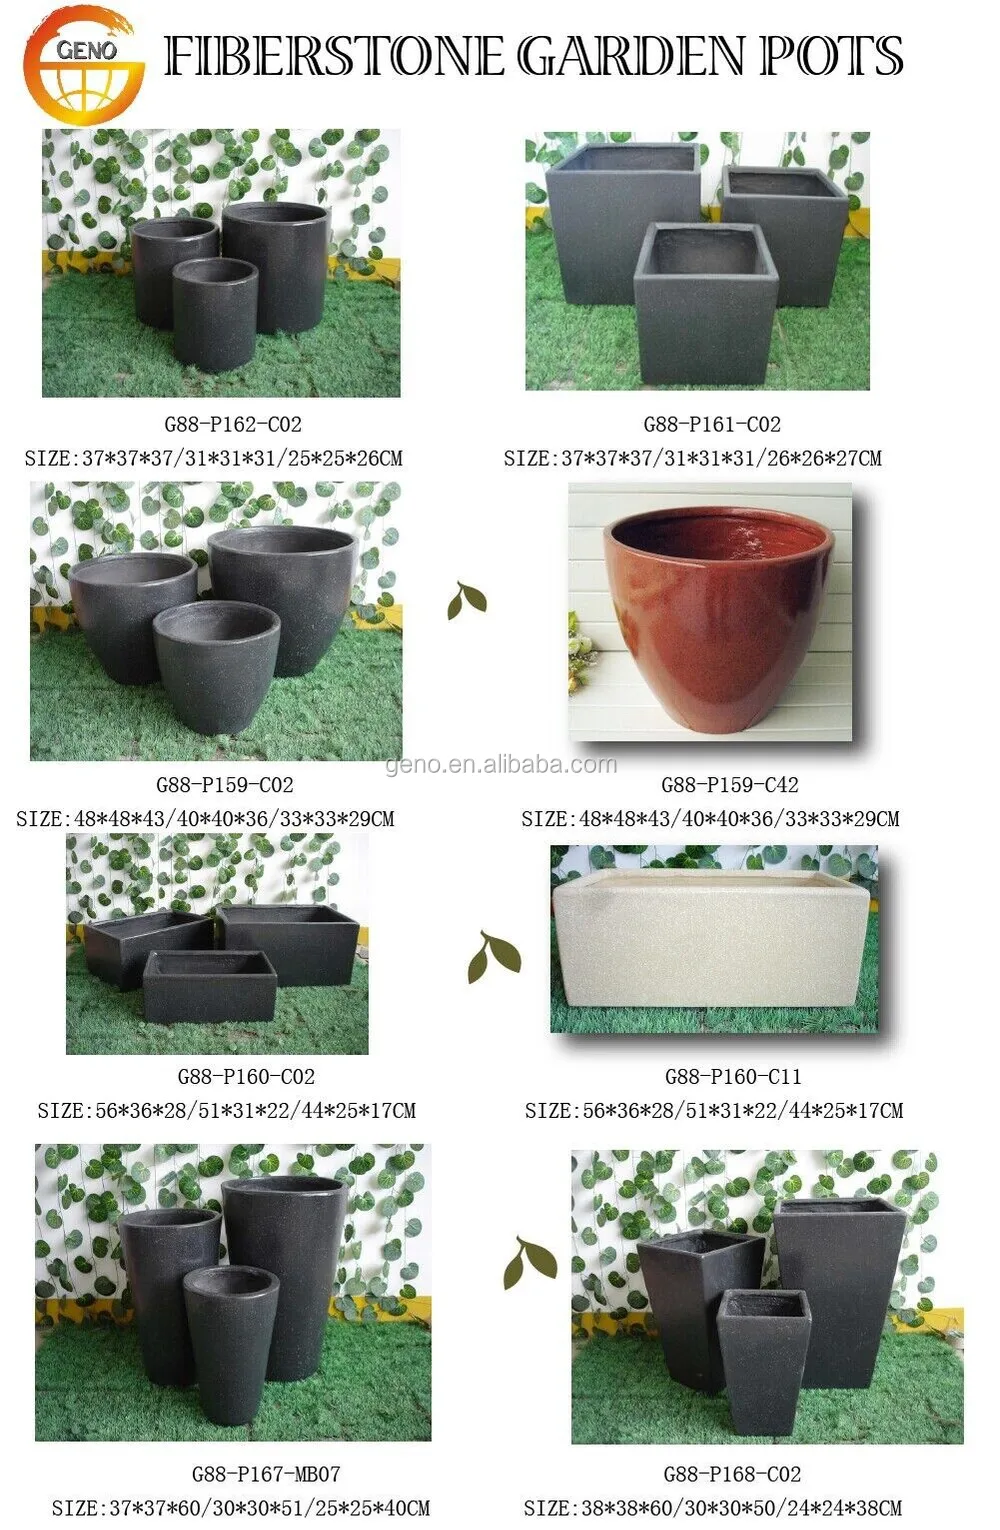 catalogue de pots en fibre d'argile - GENO INDUSTRY.jpg